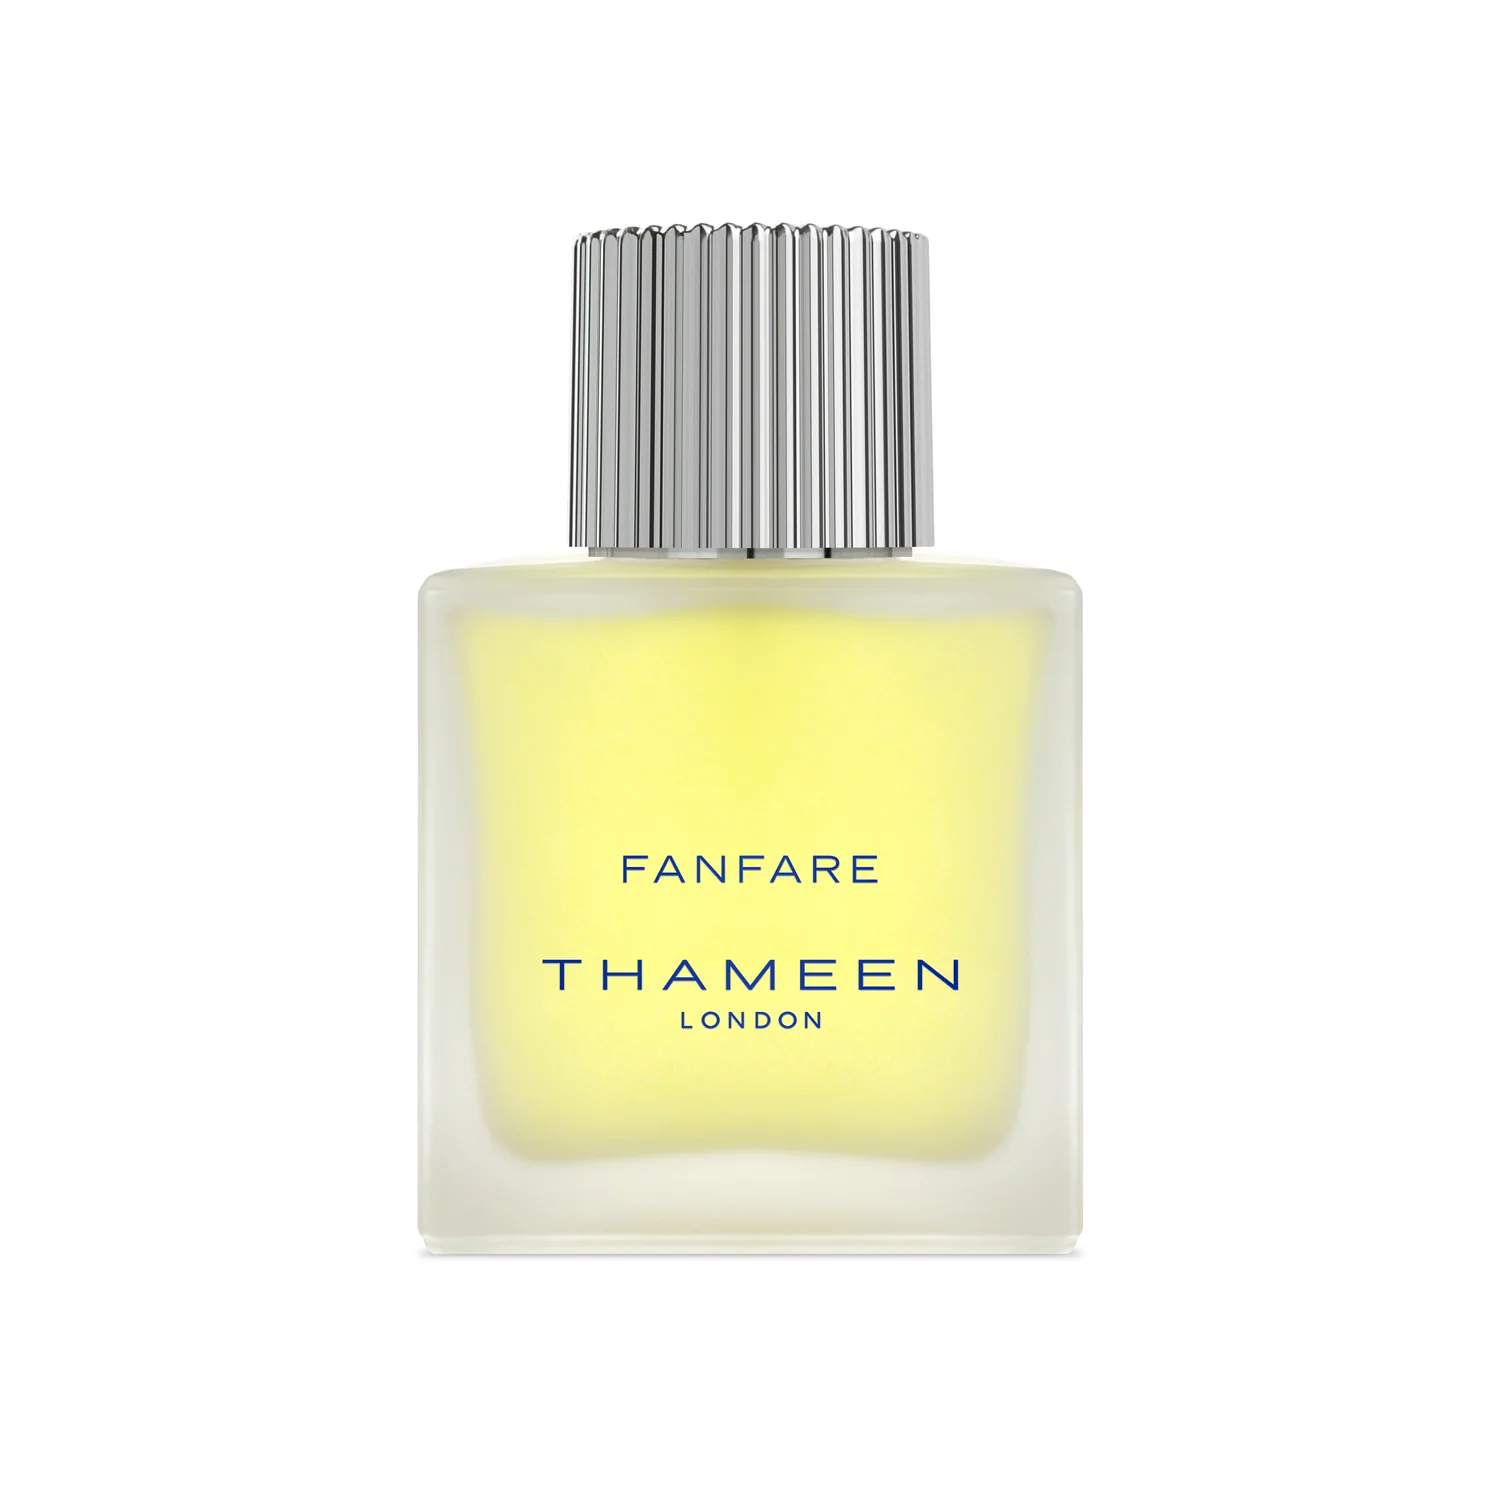 Thameen London - Fanfare - Cologne Elixir